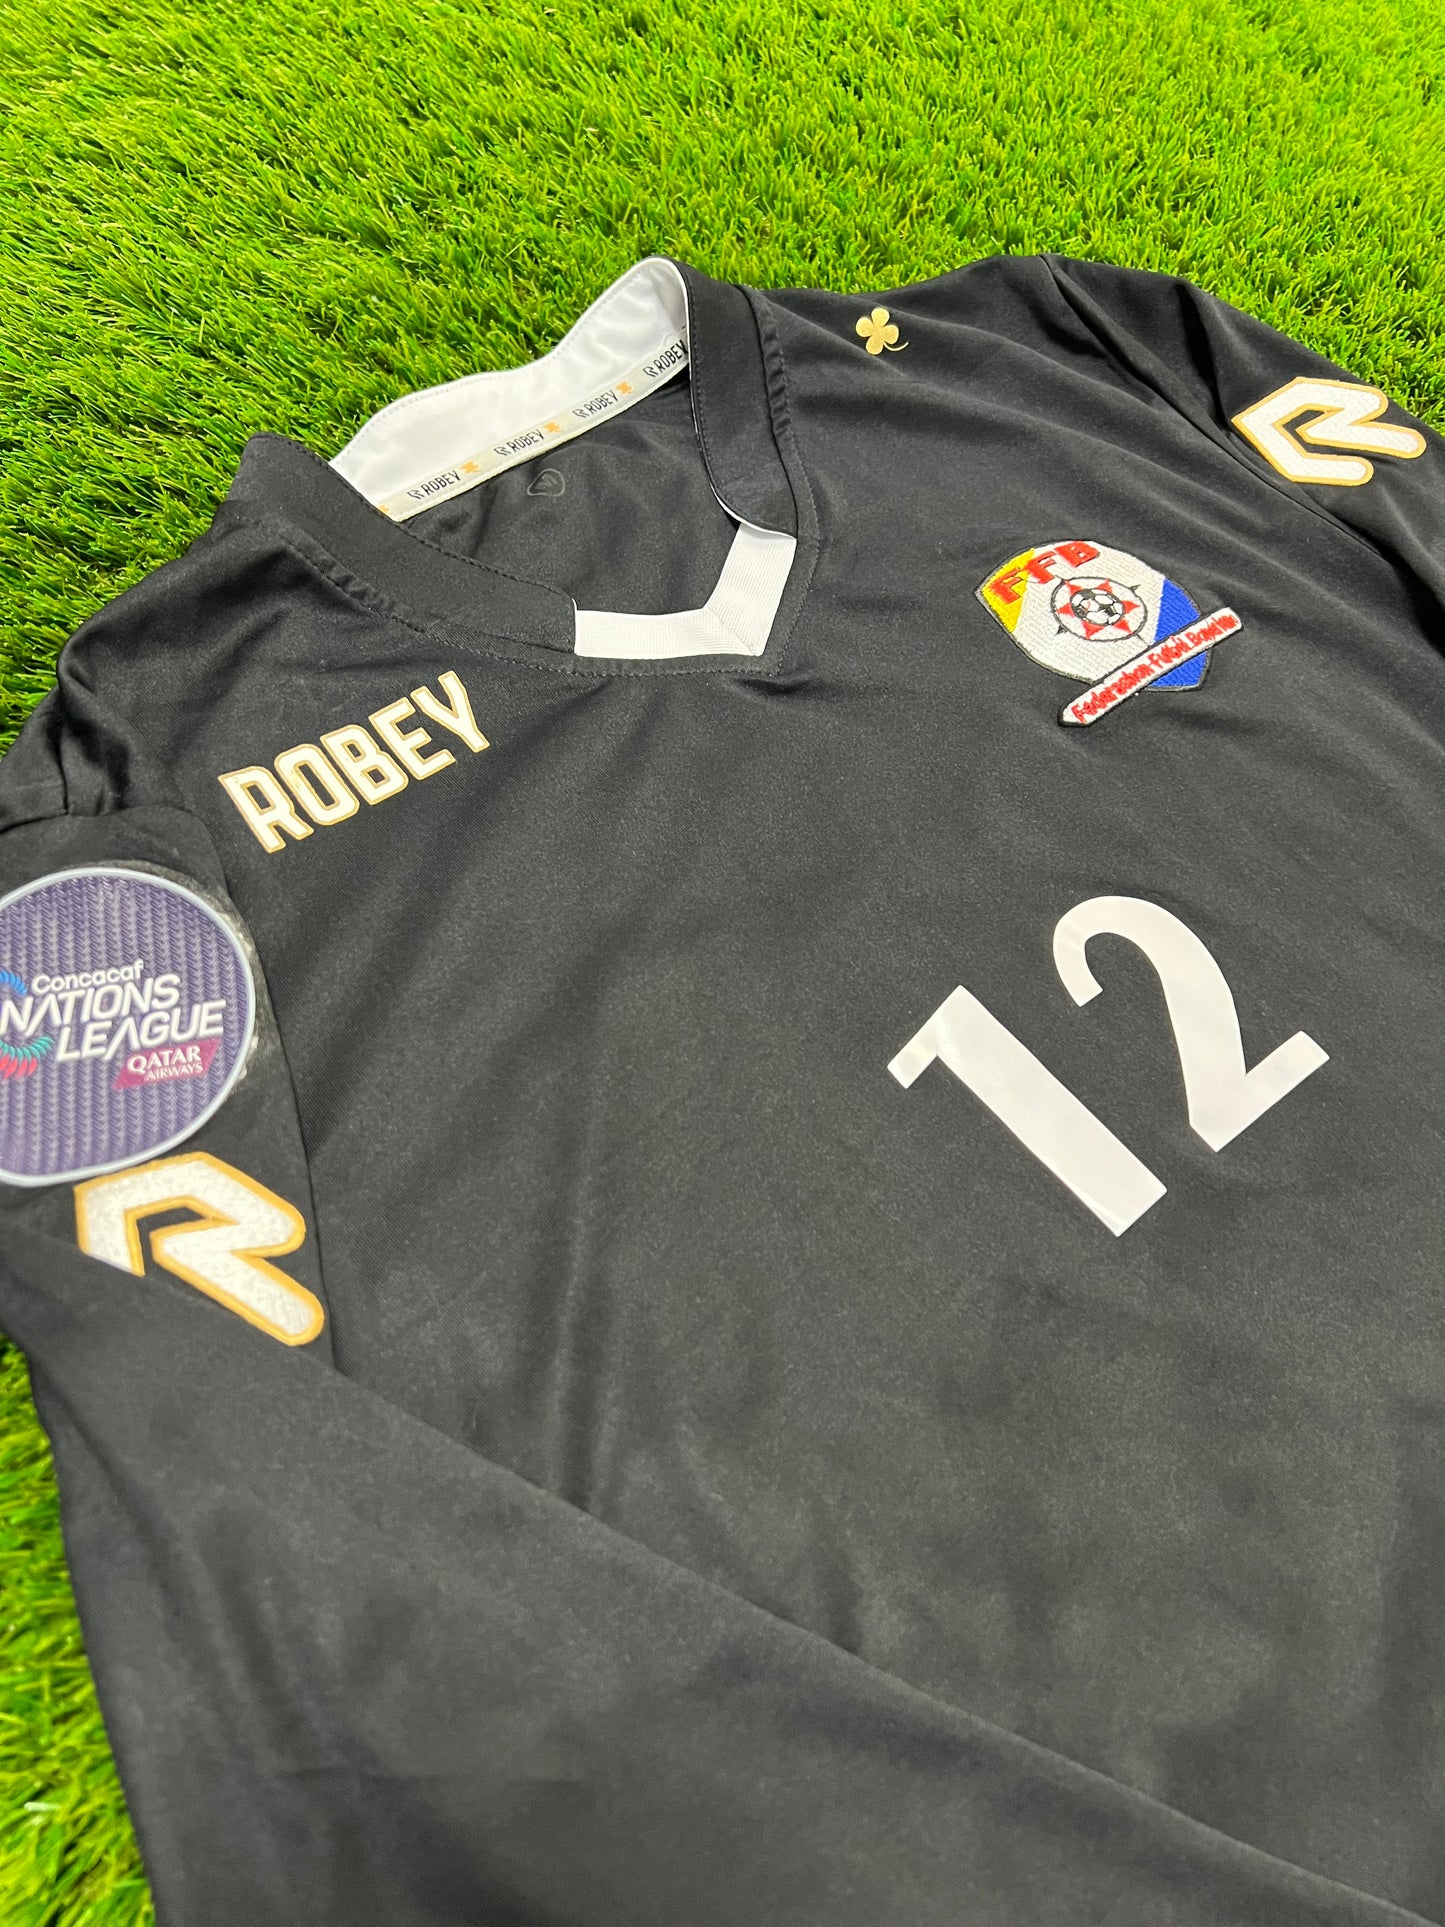 2019 Bonaire Match Issue Goalkeeper Shirt - Roojer #12